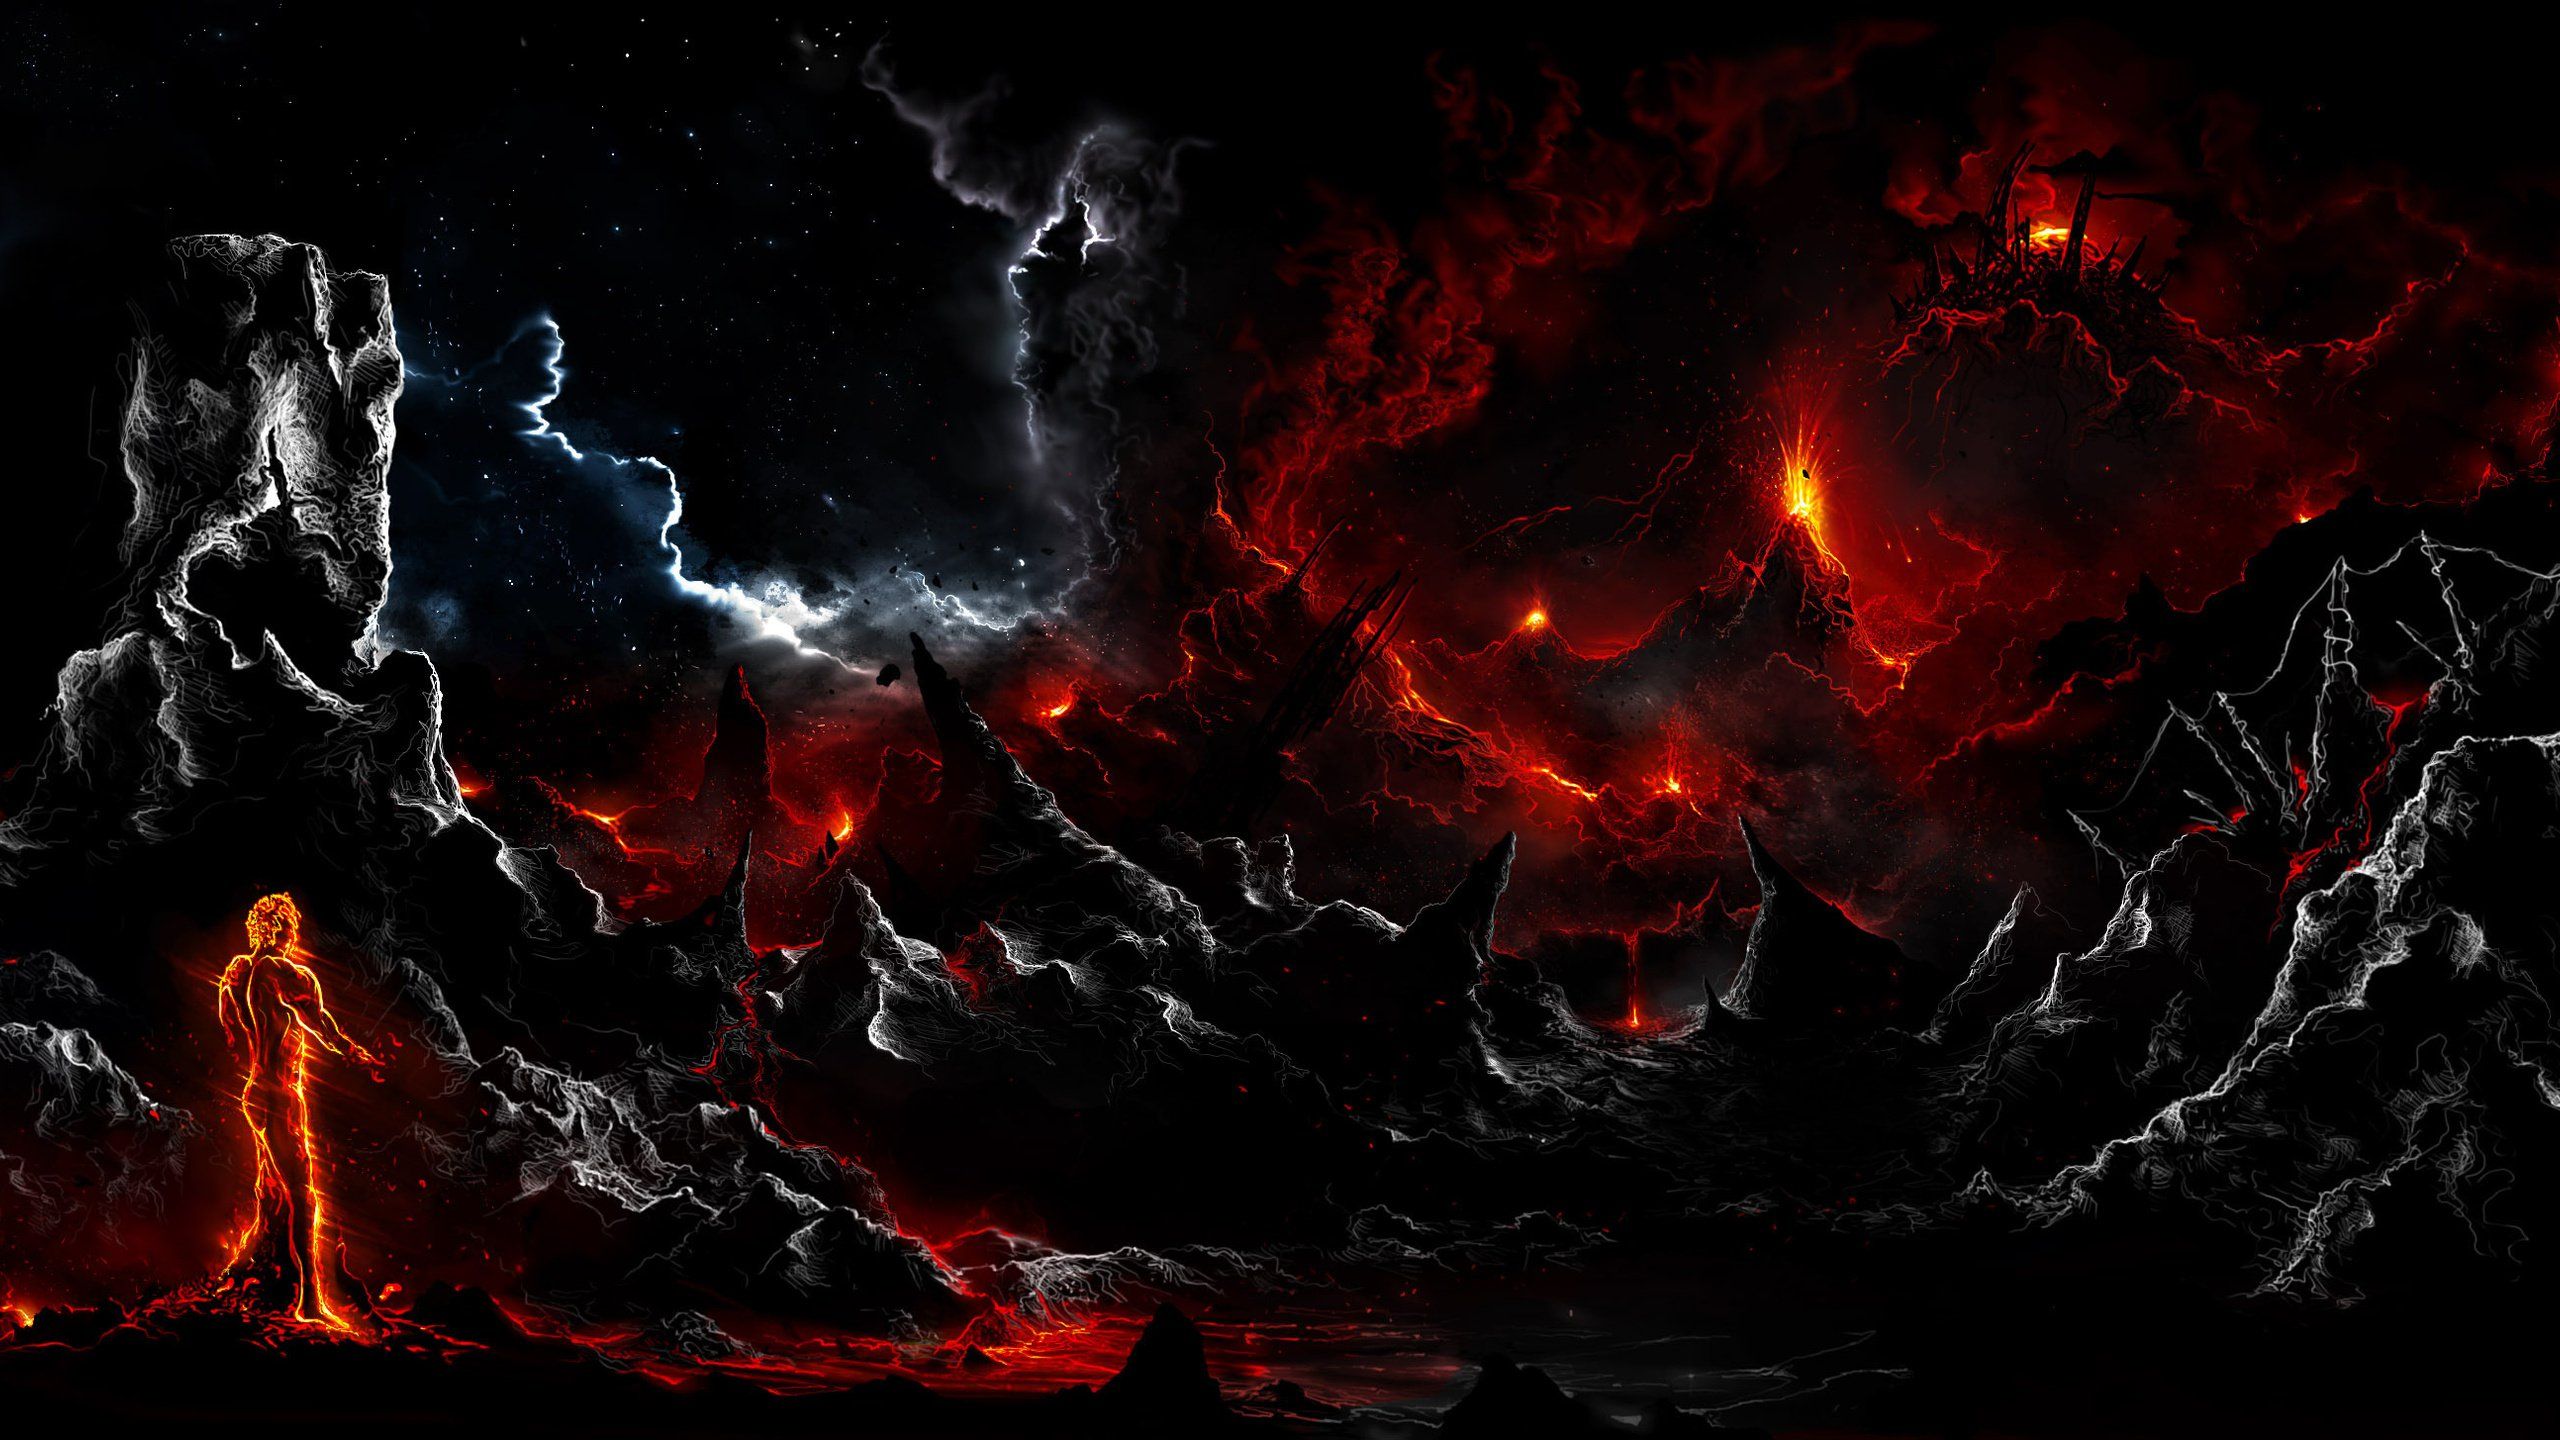 Alberto vangelista rock man fire dark art lava clouds wallpaperx1440